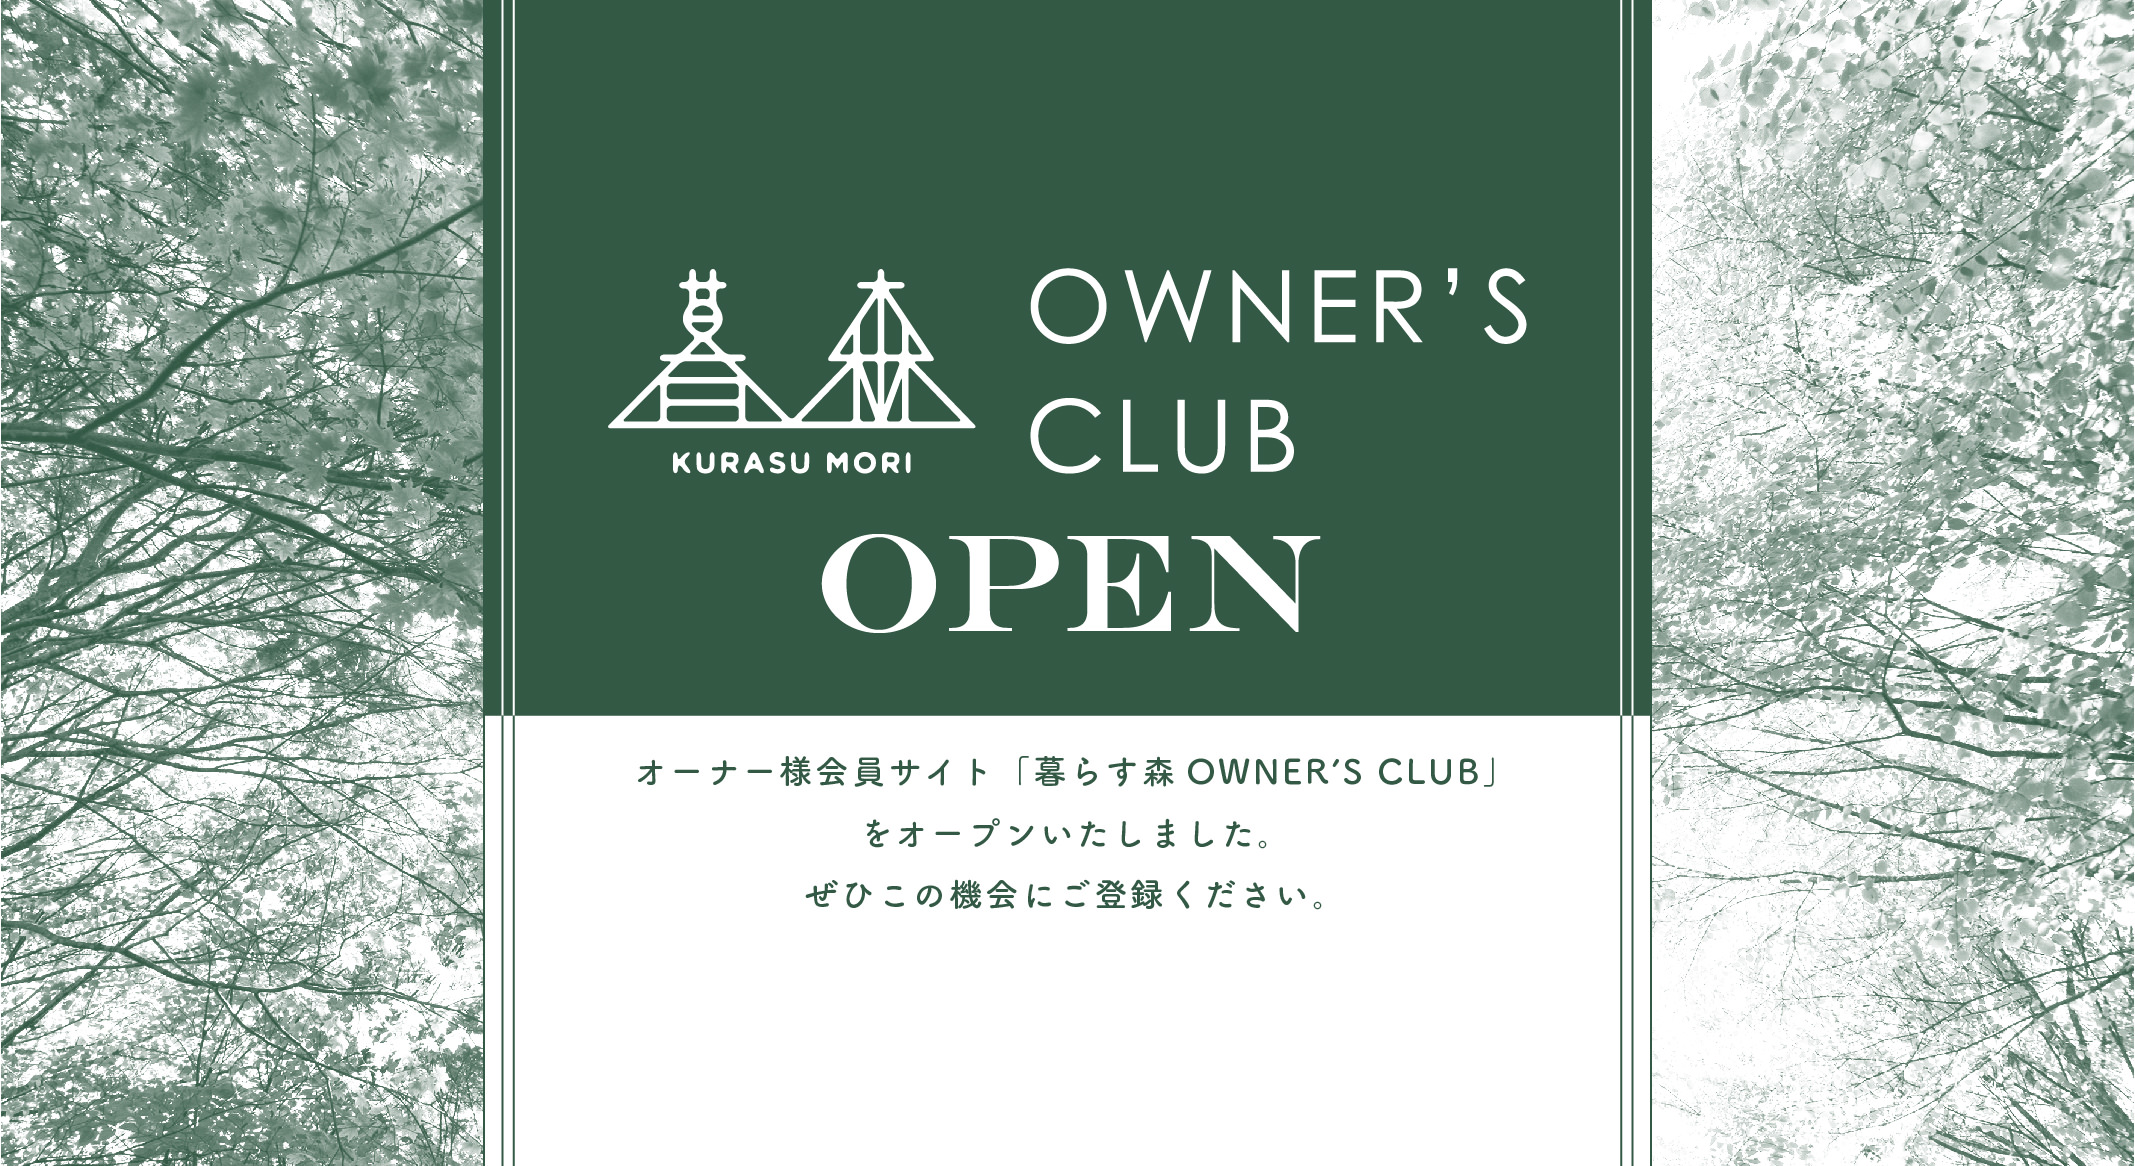 暮らす森 OWNER’S CLUB　OPEN　オーナー様会員サイト「暮らす森 OWNER’S CLUB」をオープンいたしました。ぜひこの機会にご登録ください。